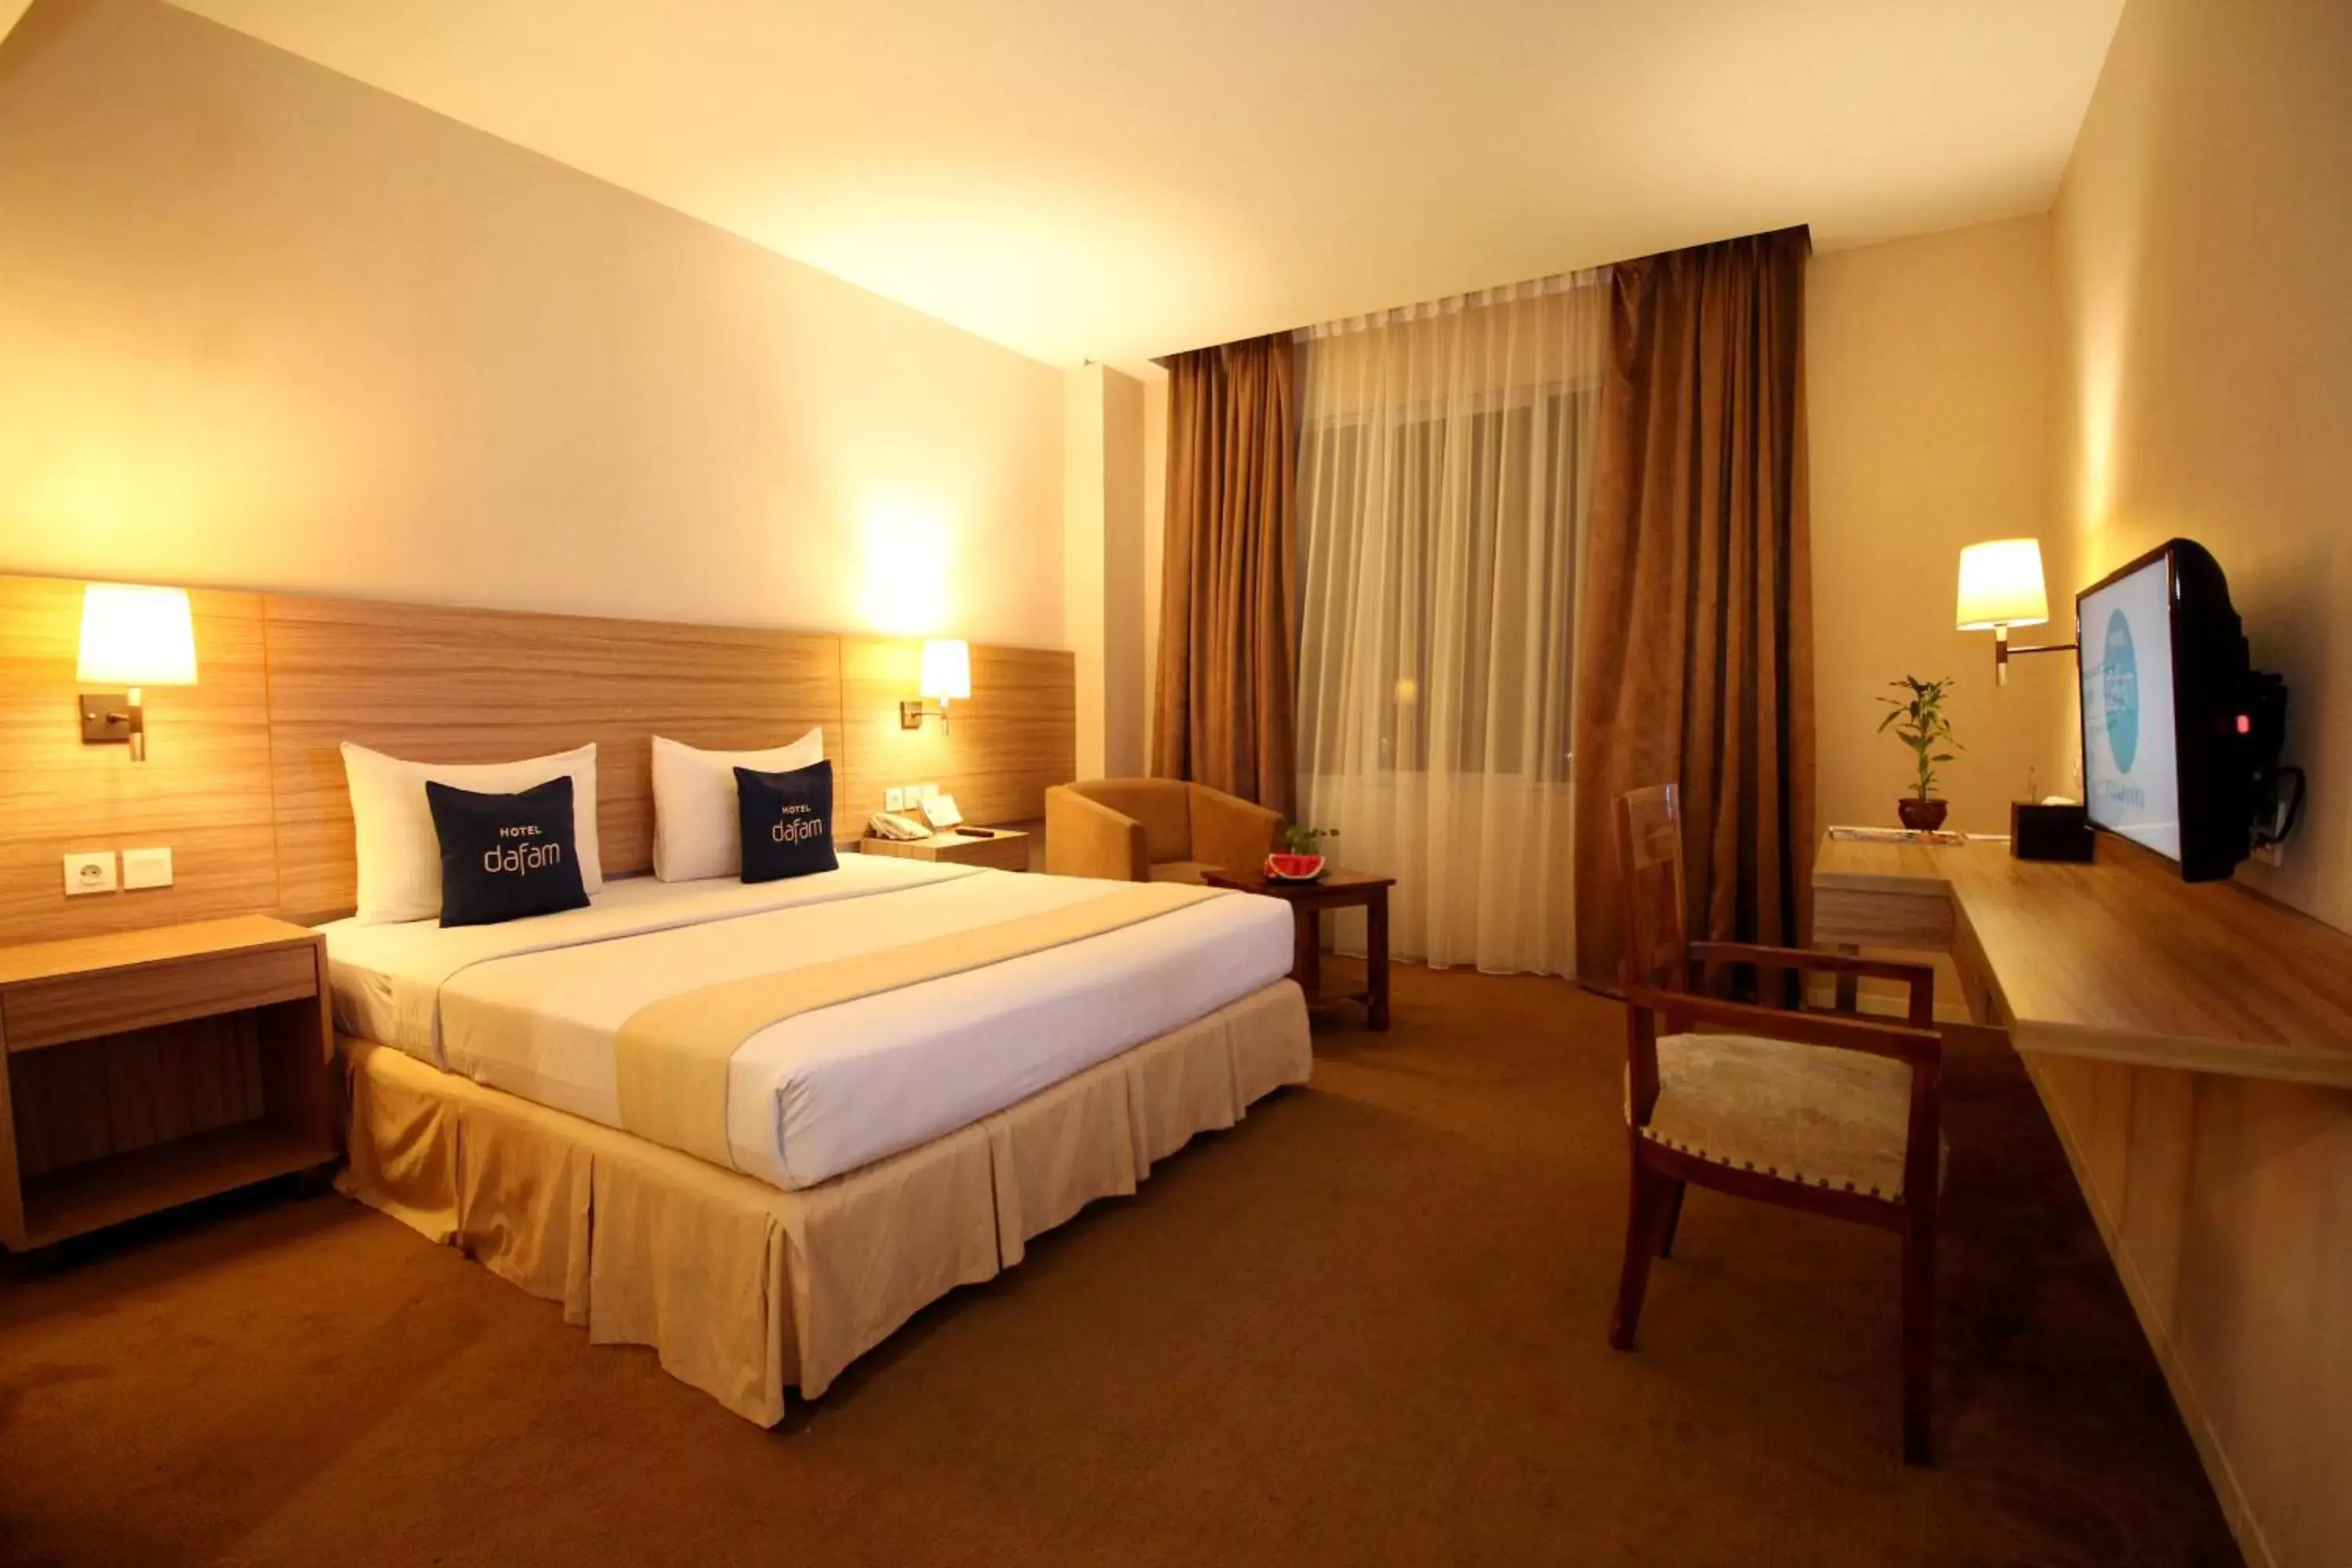 Bed in Hotel Dafam Pekanbaru